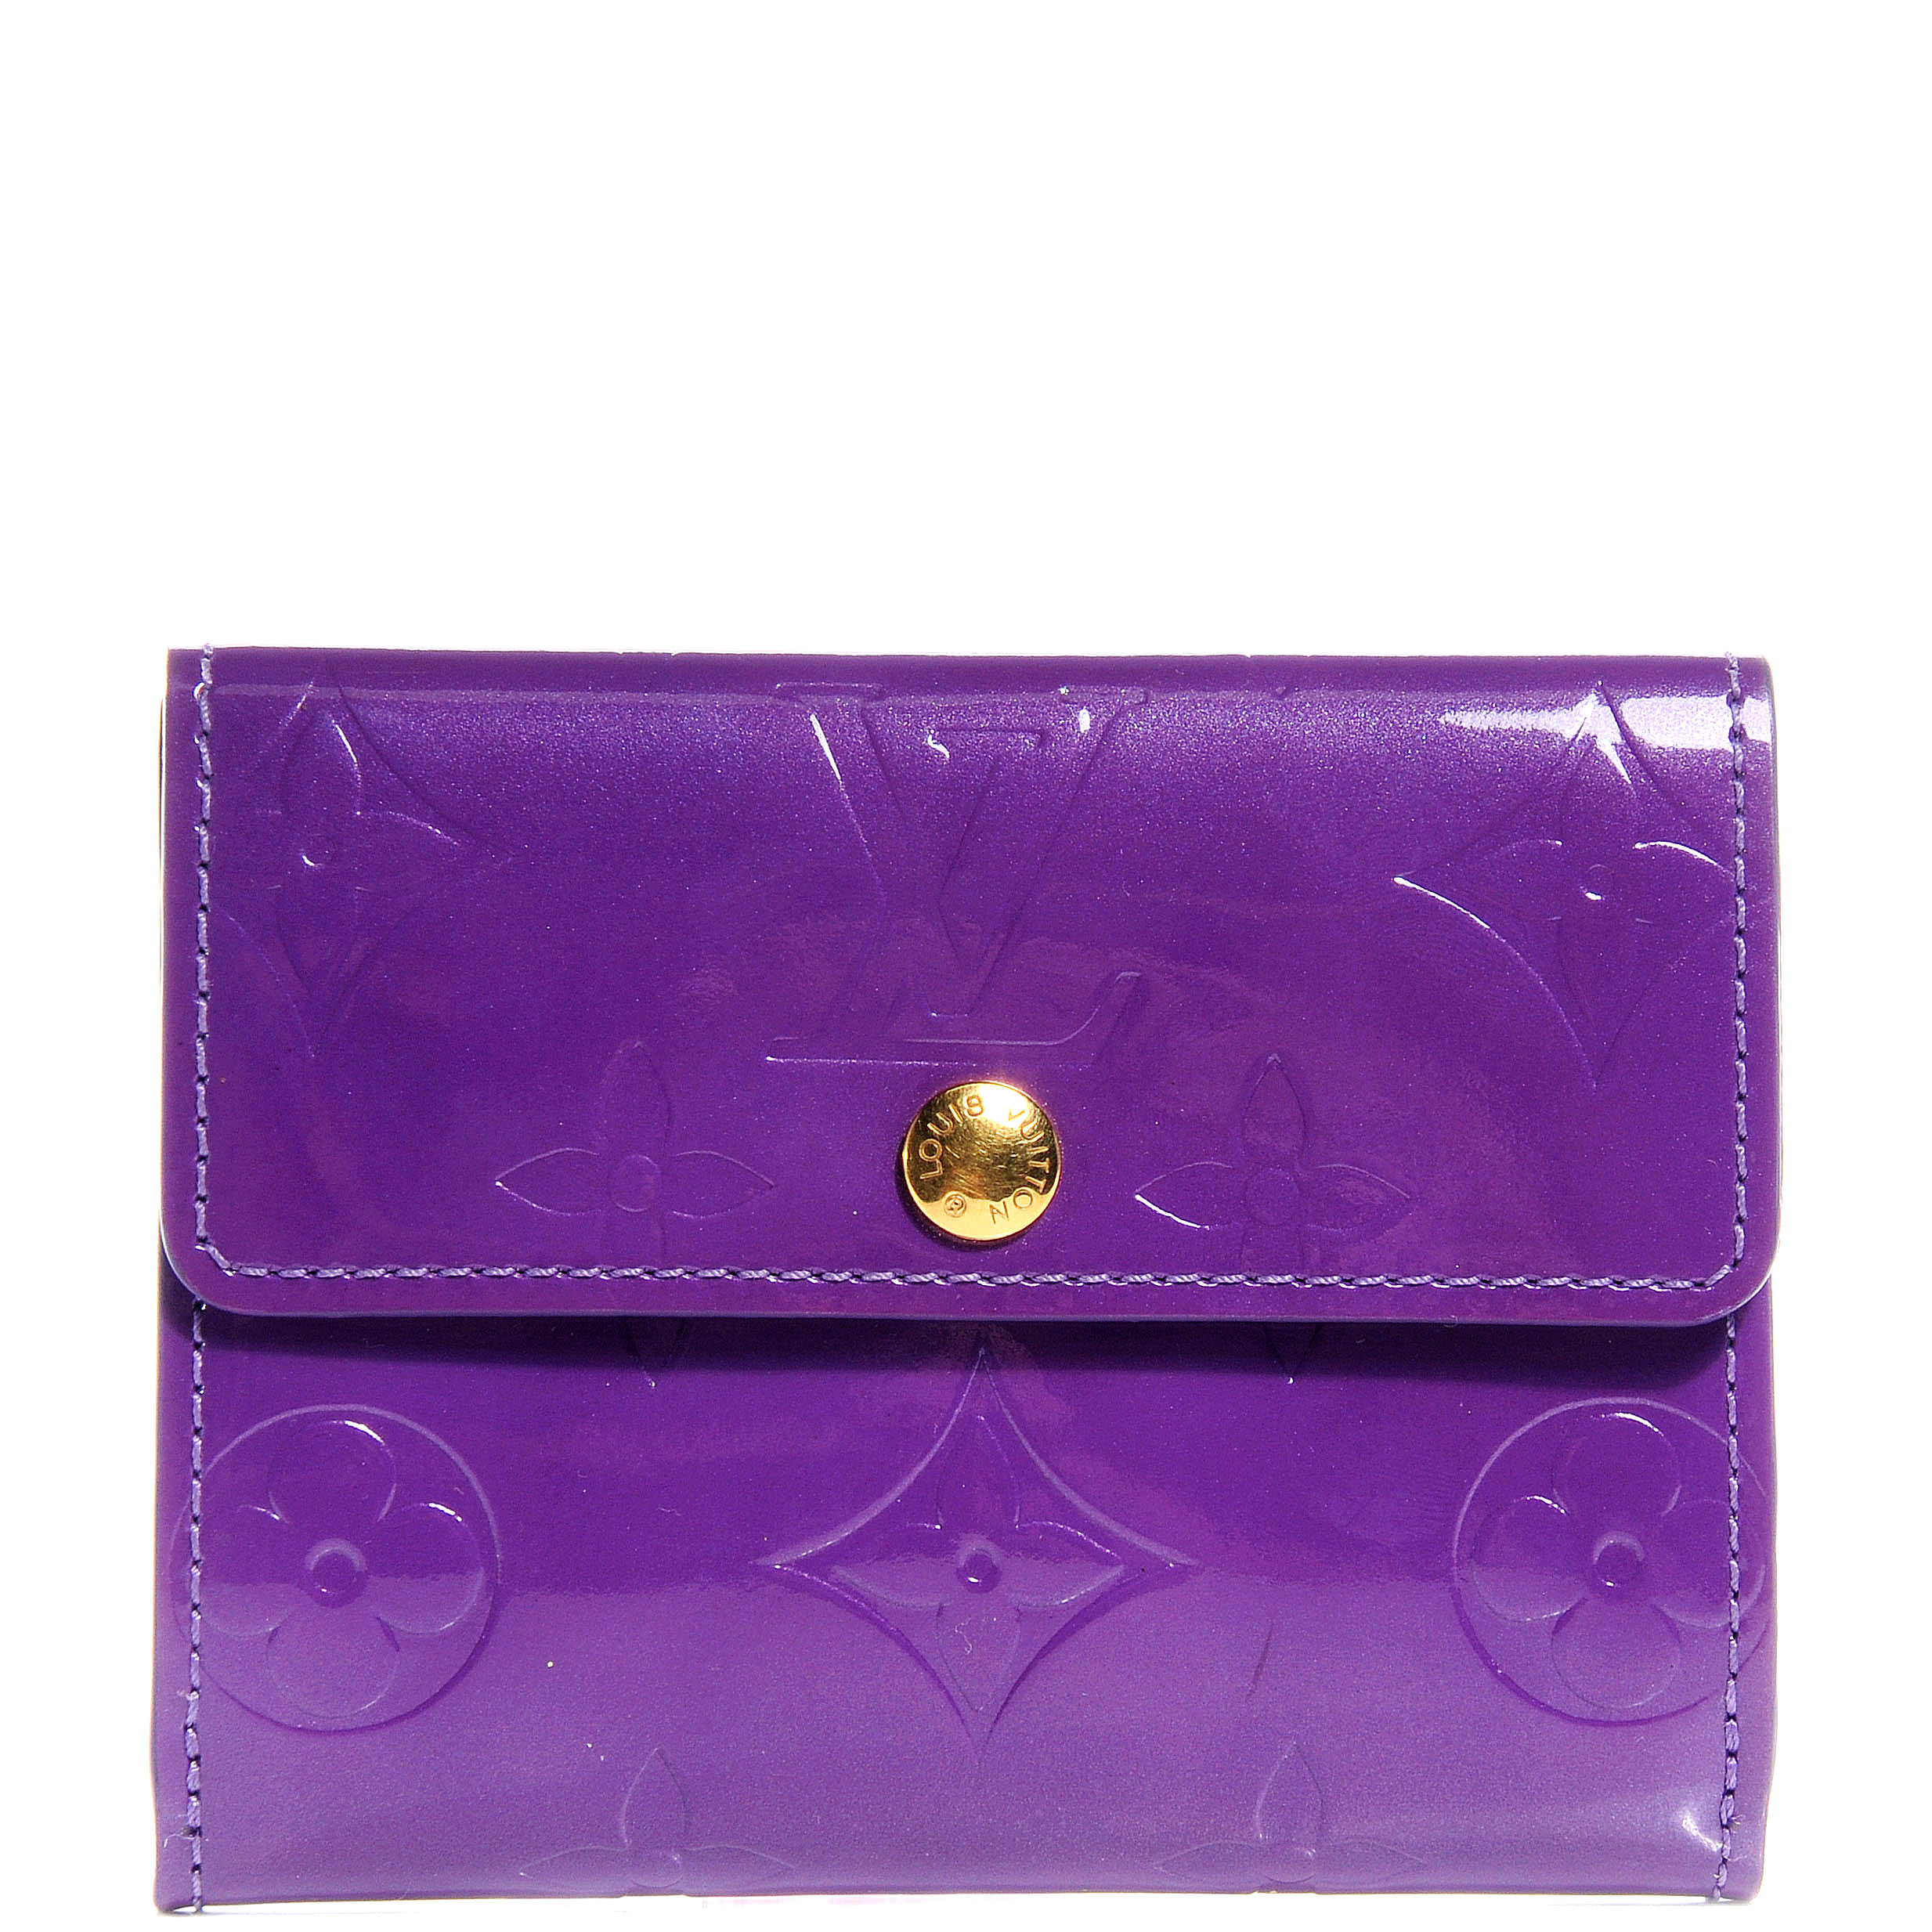 LOUIS VUITTON Vernis Ludlow Wallet Purple 64350